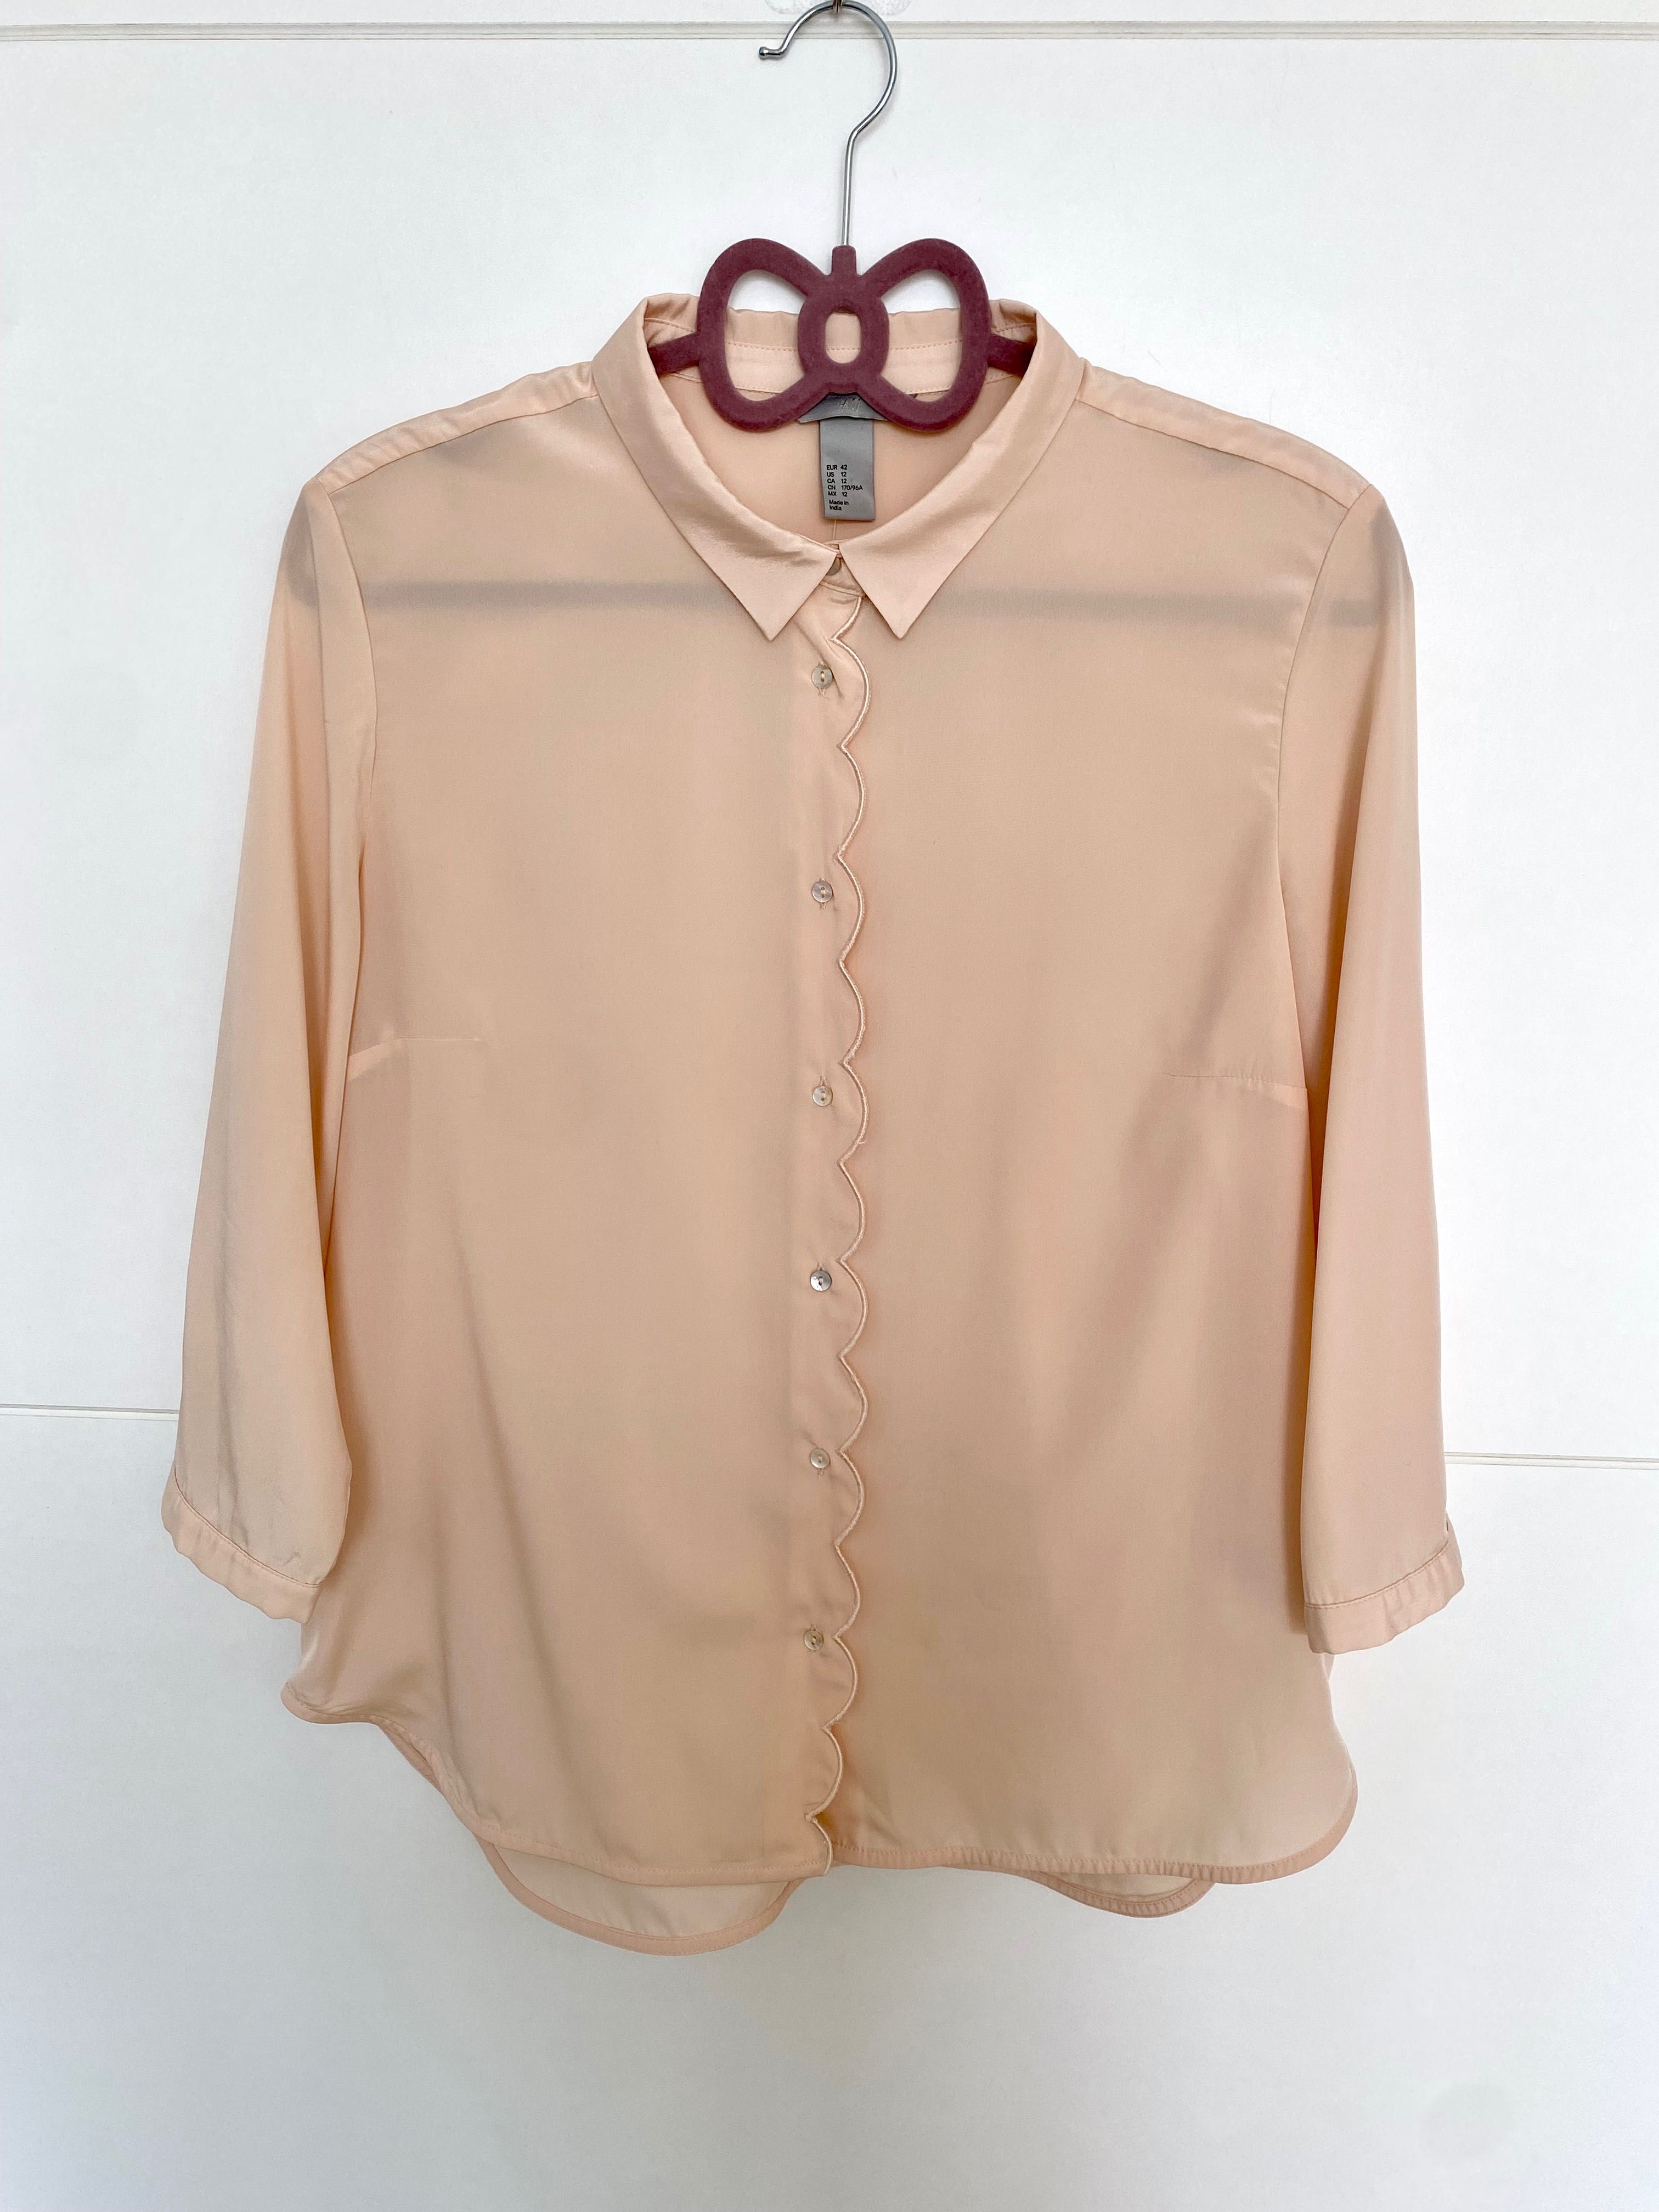 Bluza roz de dama tip camasa H&M marimea 42 XL